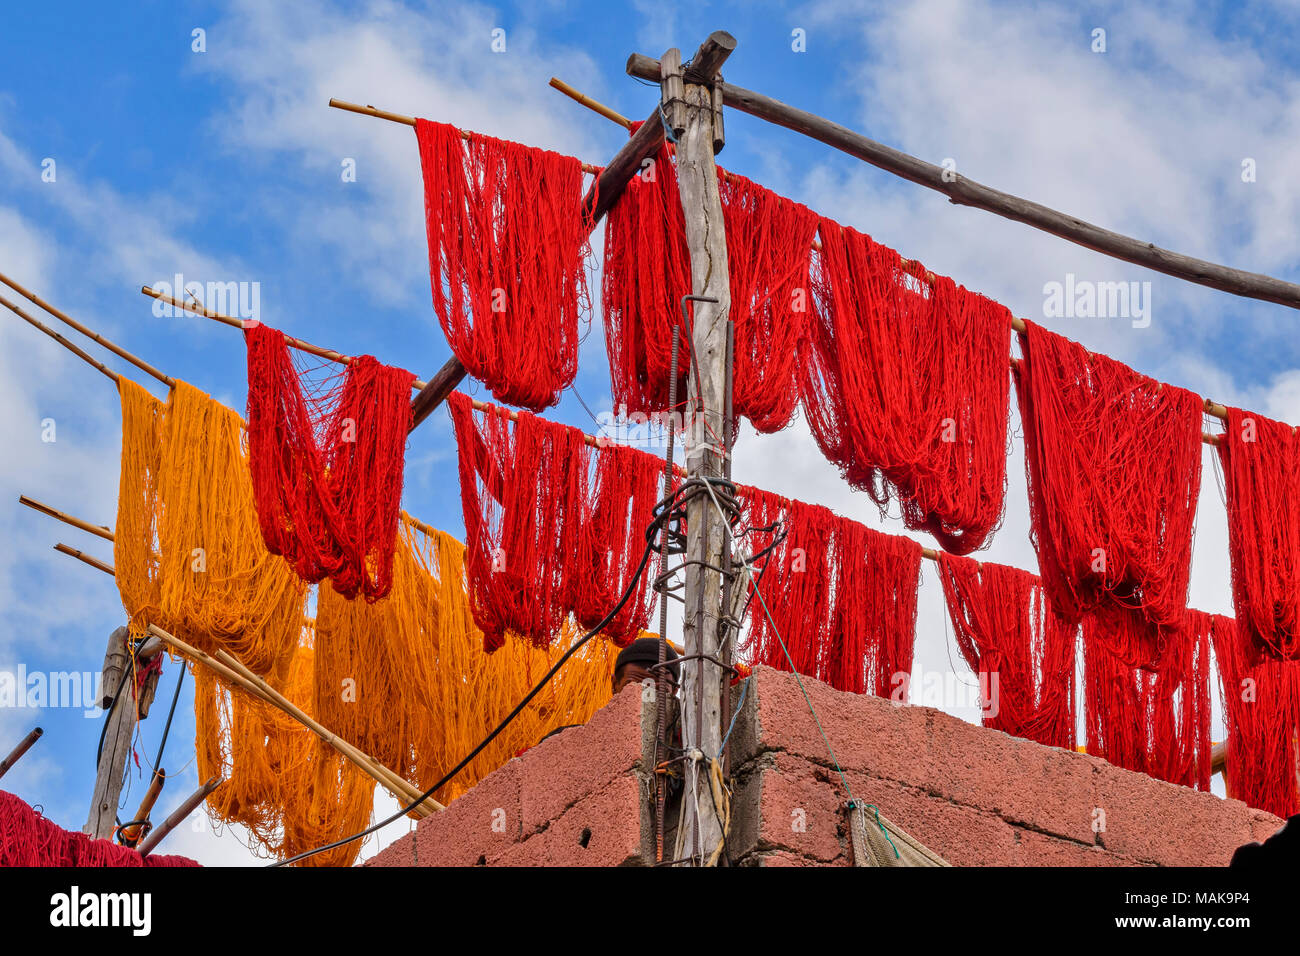 Il Marocco Marrakech Jemaa el Fna MEDINA SOUK matasse di lana di colore rosso e giallo lana tinta di essiccazione al sole Foto Stock